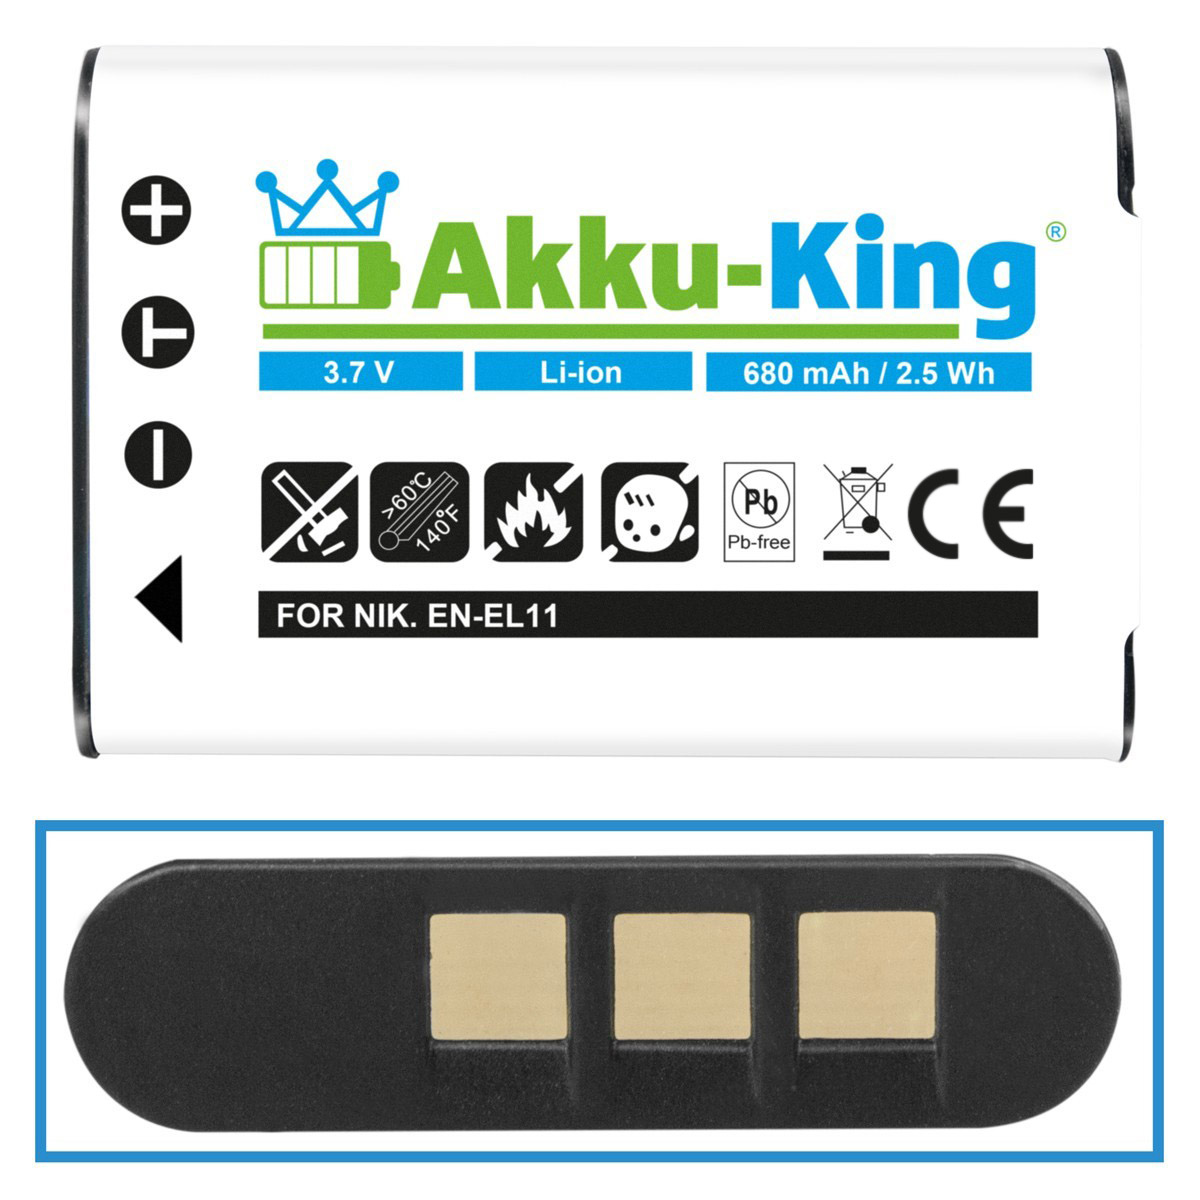 Kamera-Akku, Li-Ion 680mAh Sanyo mit DB-L70 Volt, AKKU-KING kompatibel 3.7 Akku